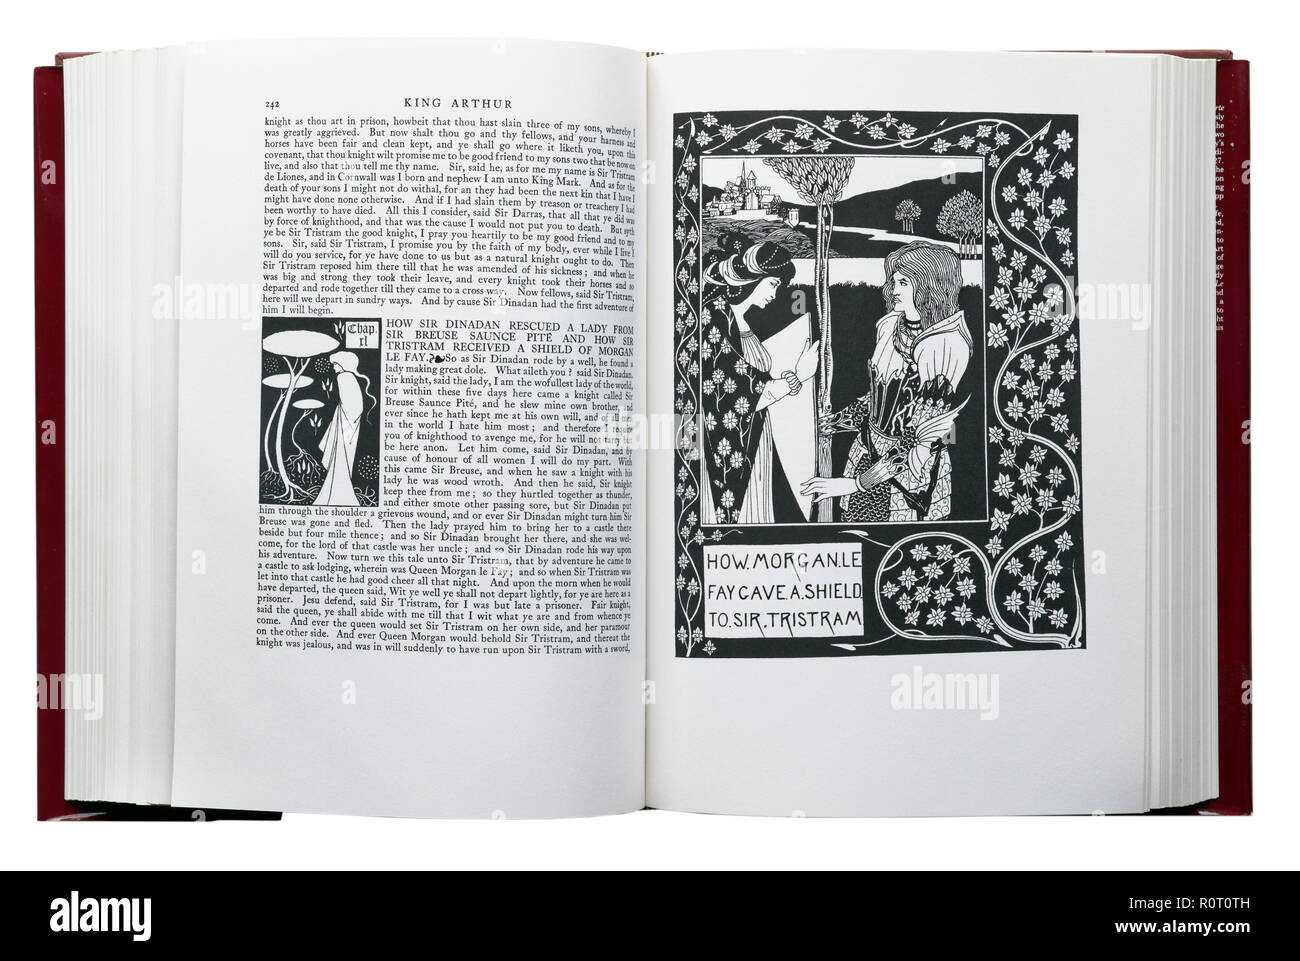 Le morte d'Arthur di Sir Thomas Malory. Illustrazione di come Morgan Le Fay diede uno scudo per Sir Tristram da Aubrey Beardsley Foto Stock